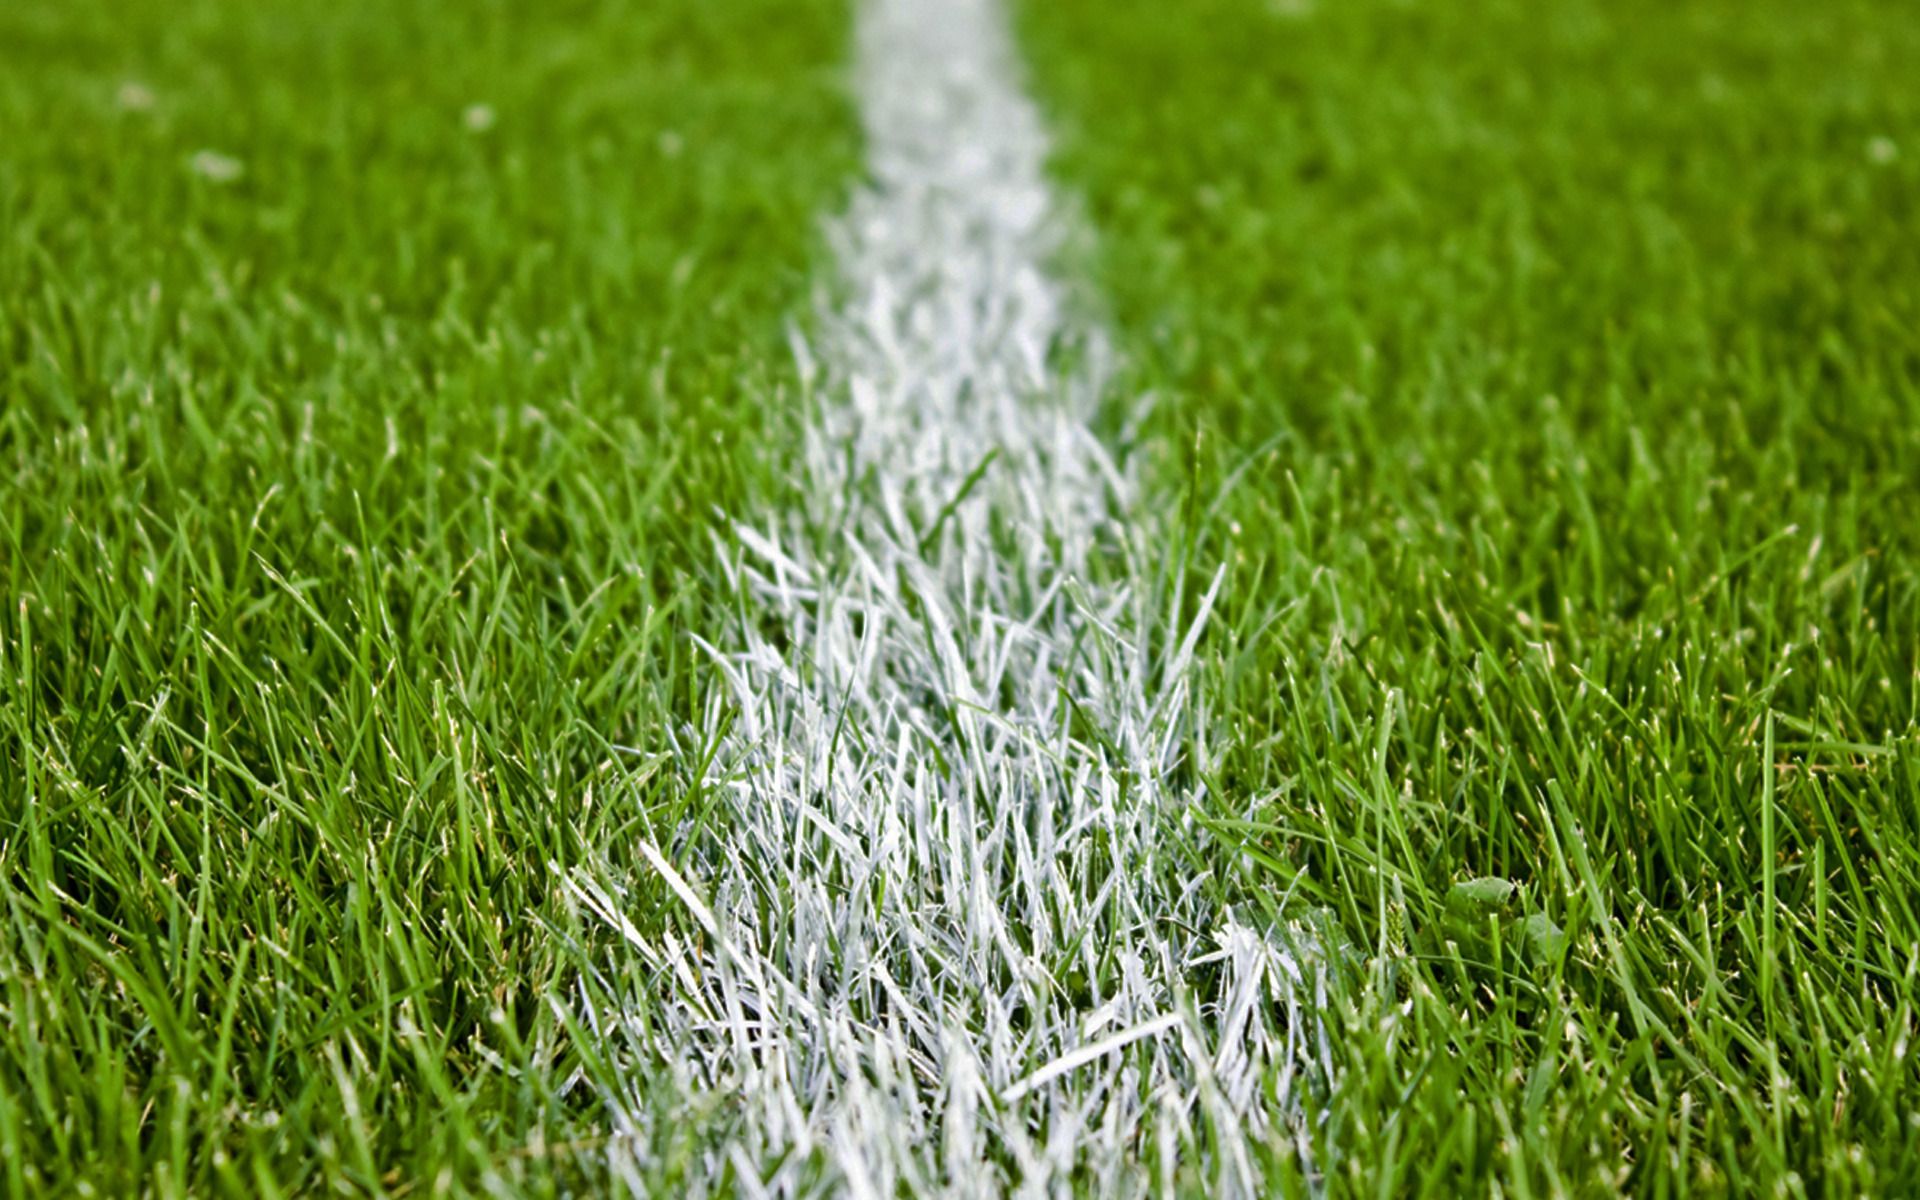 1920x1200 Football Grass Pitch